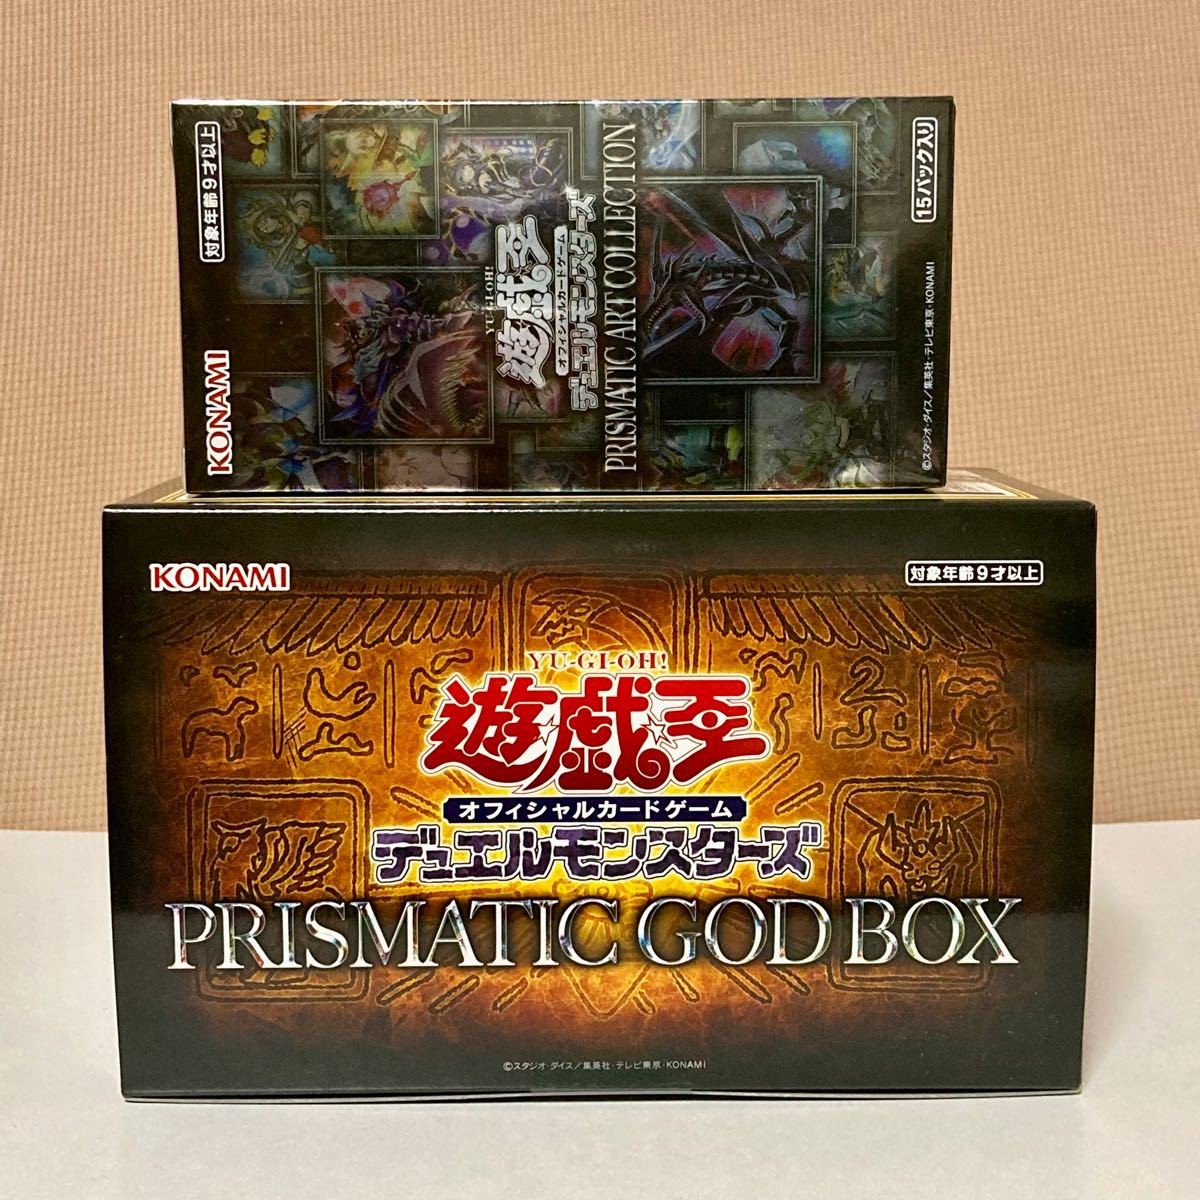 新品未開封 遊戯王 プリズマティックアートコレクション PRISMATIC GOD